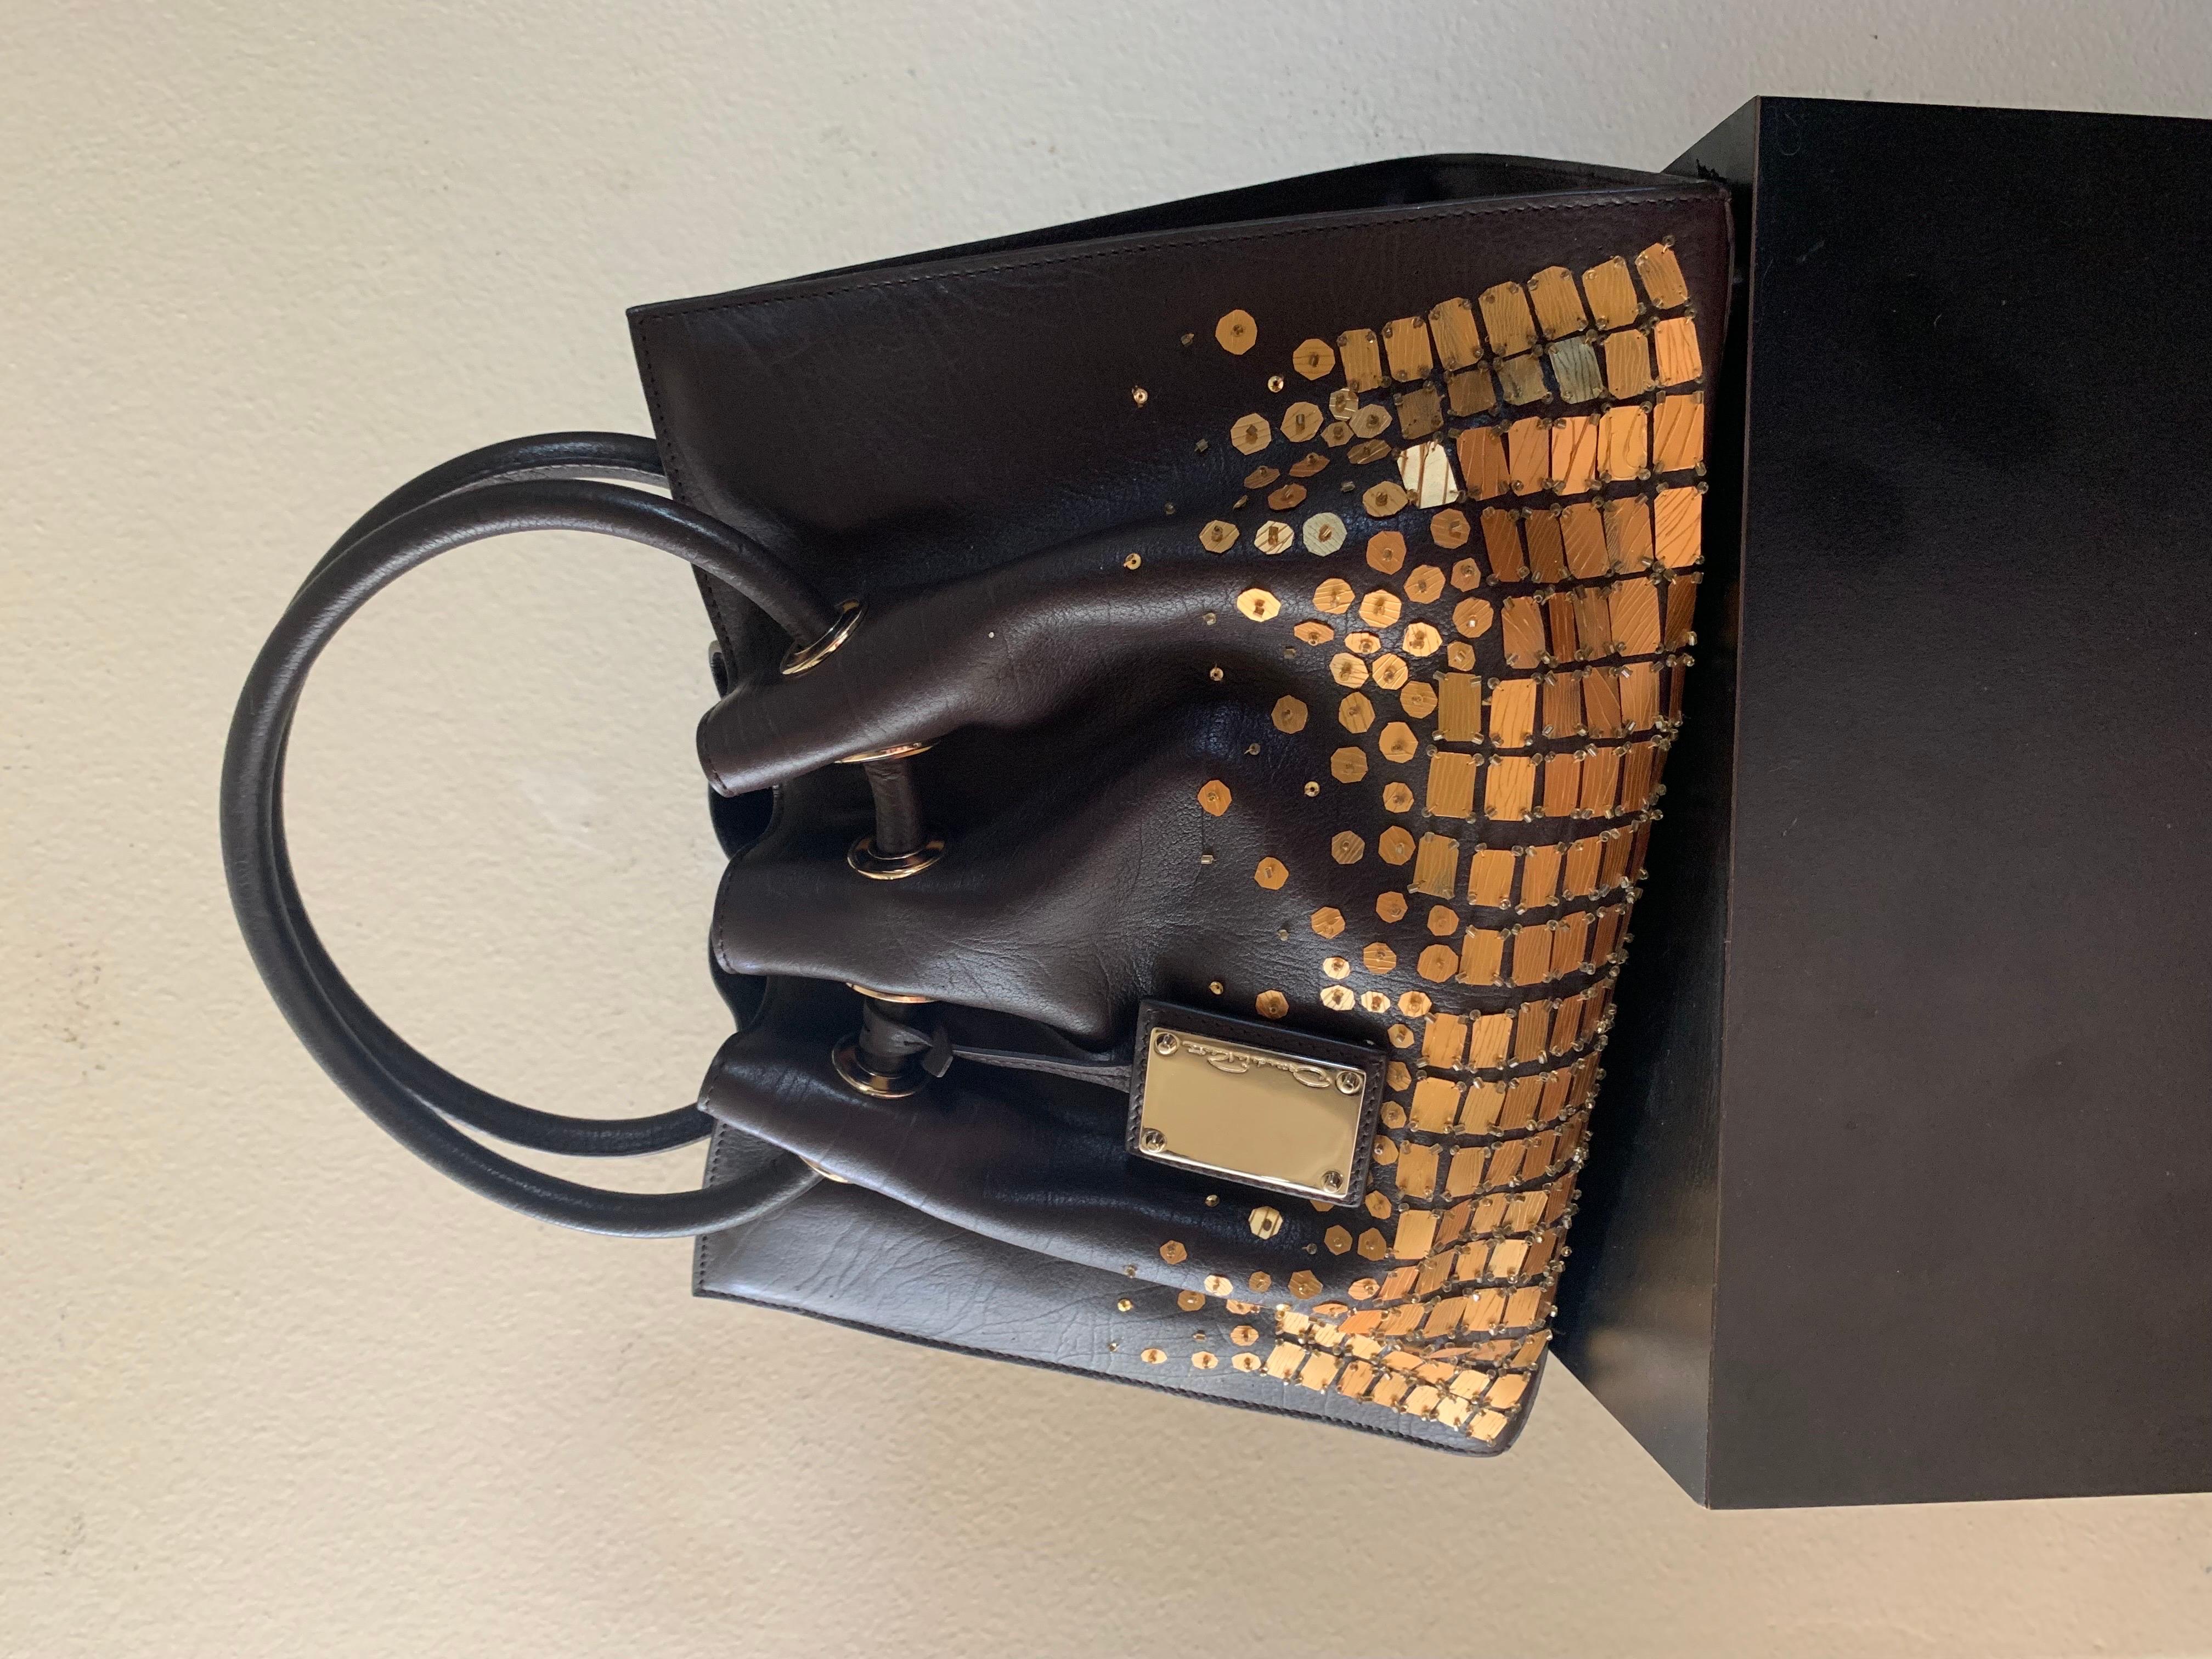 Women's Oscar de la Renta Hand Beaded Brown Leather Handbag, Italy. NWOT For Sale